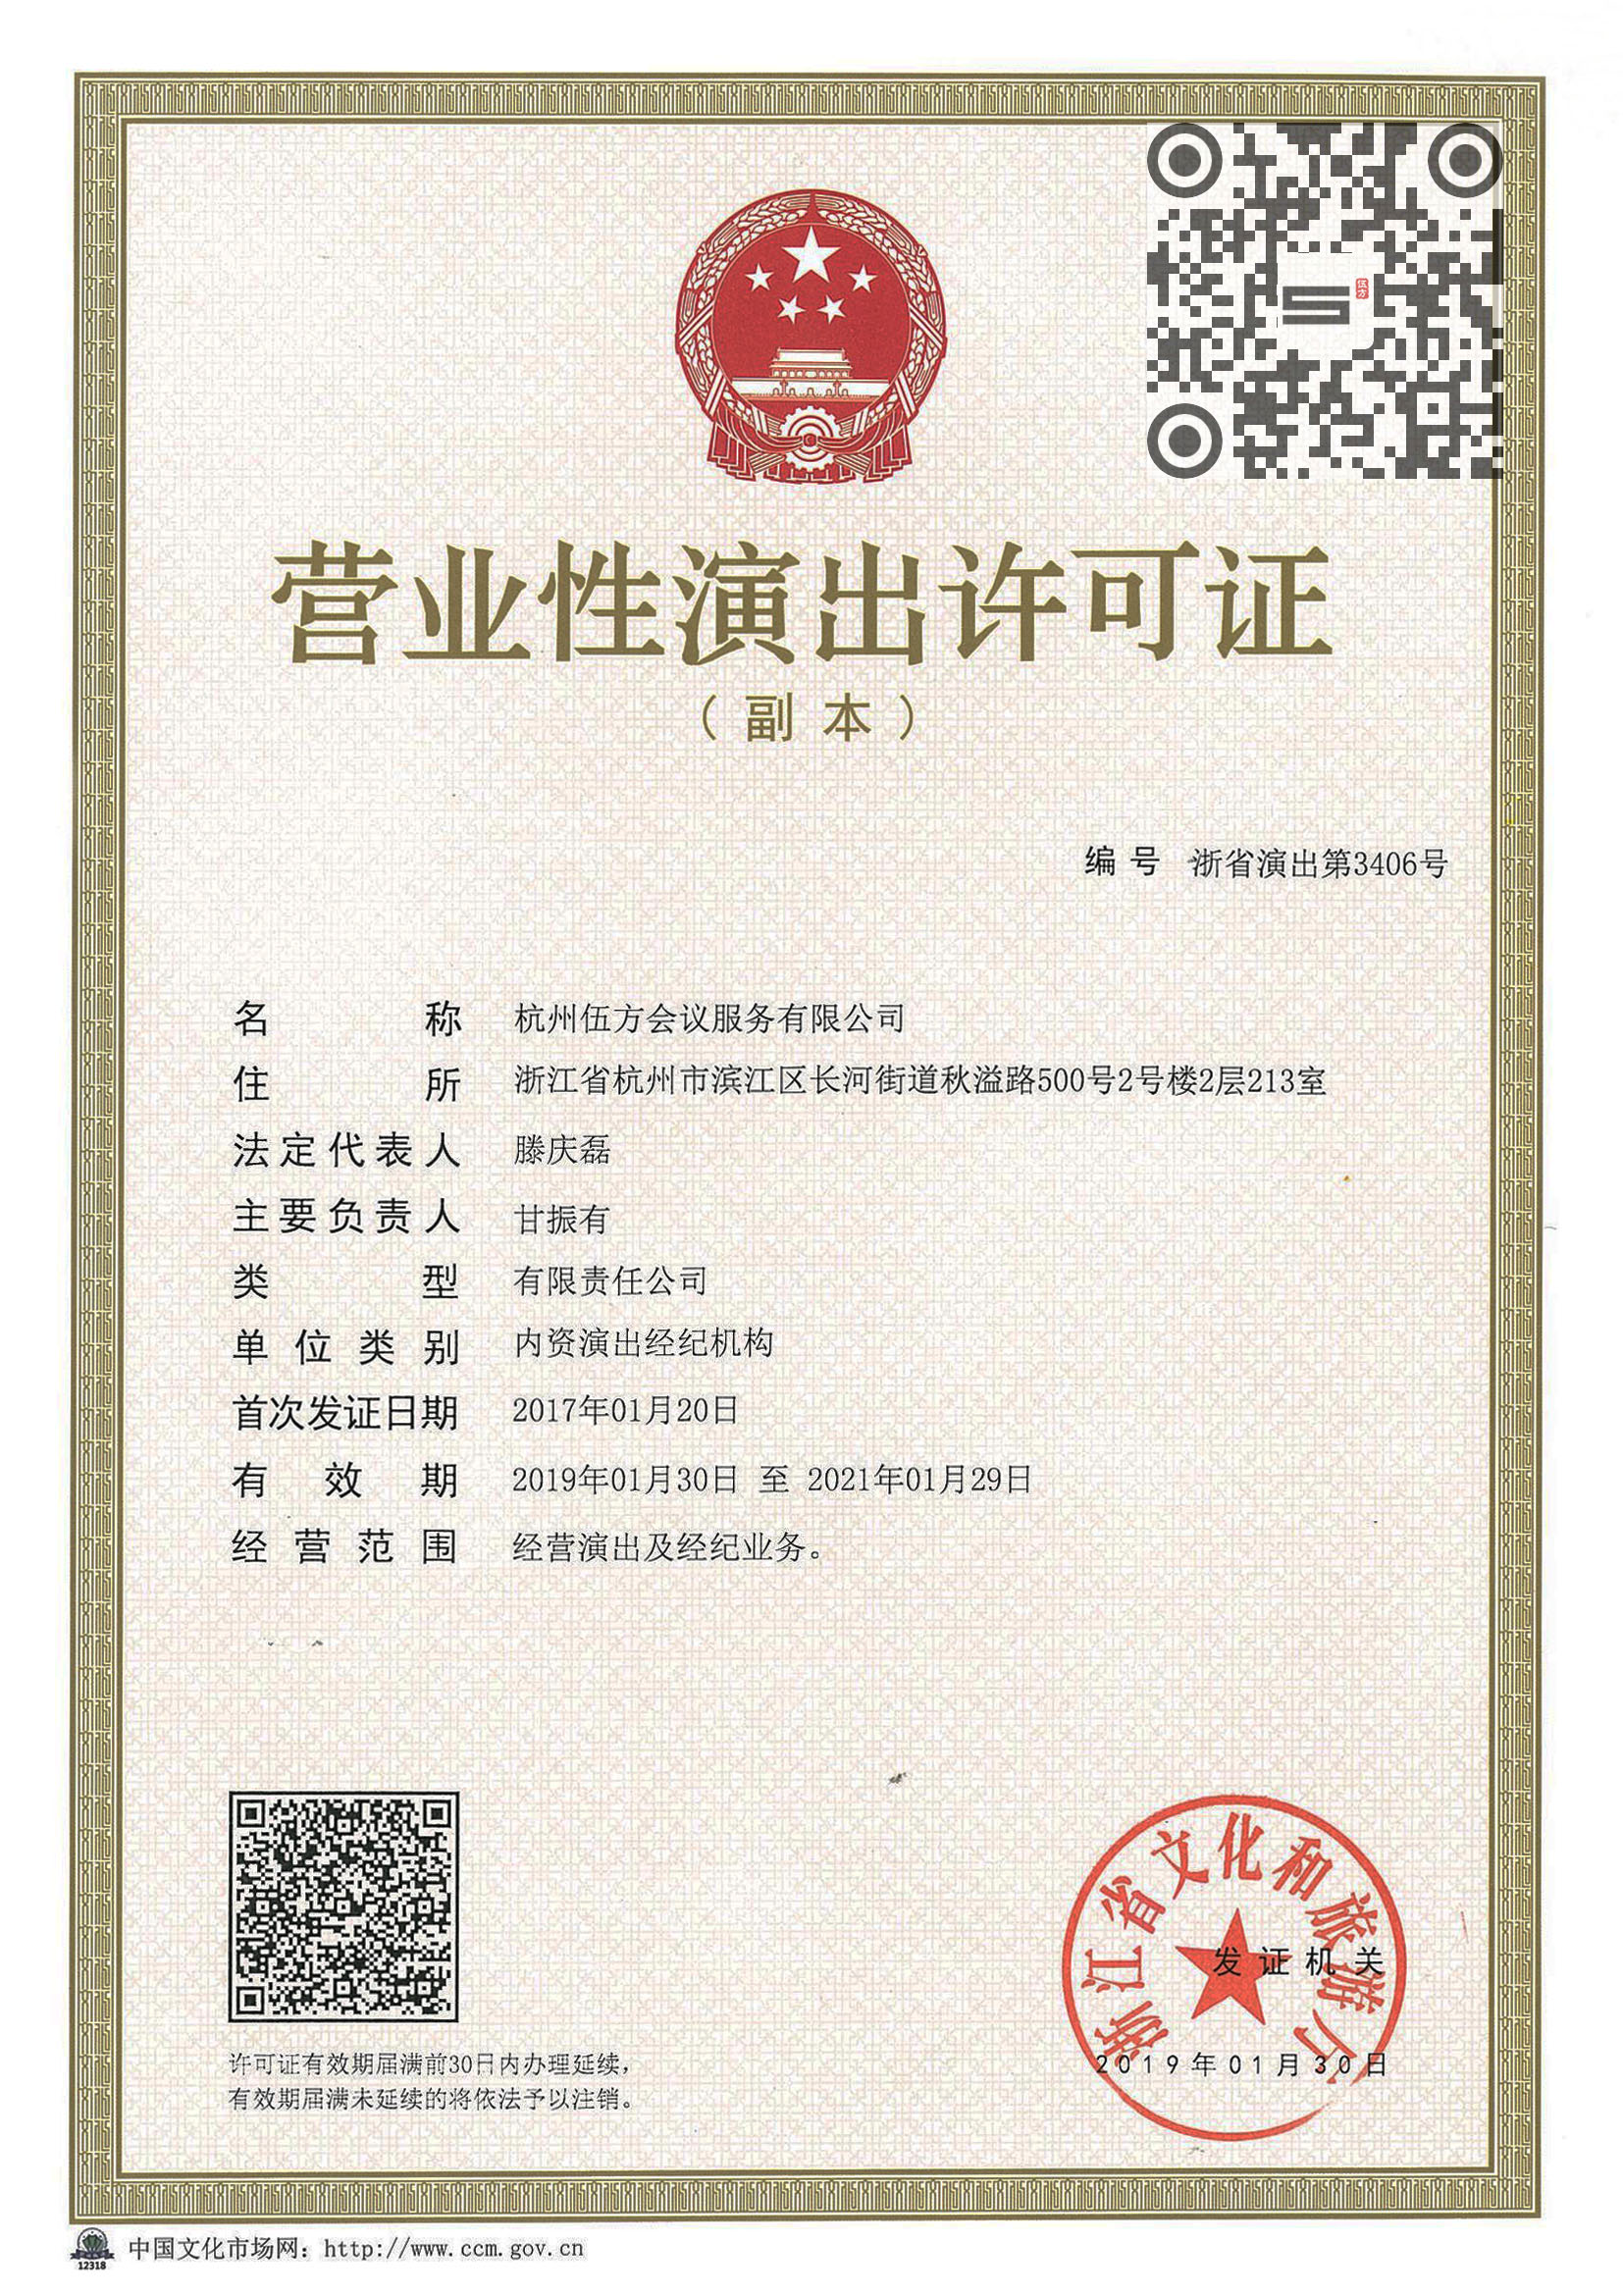 浙江省营业性演出许可证 伍方会议演出资质证书